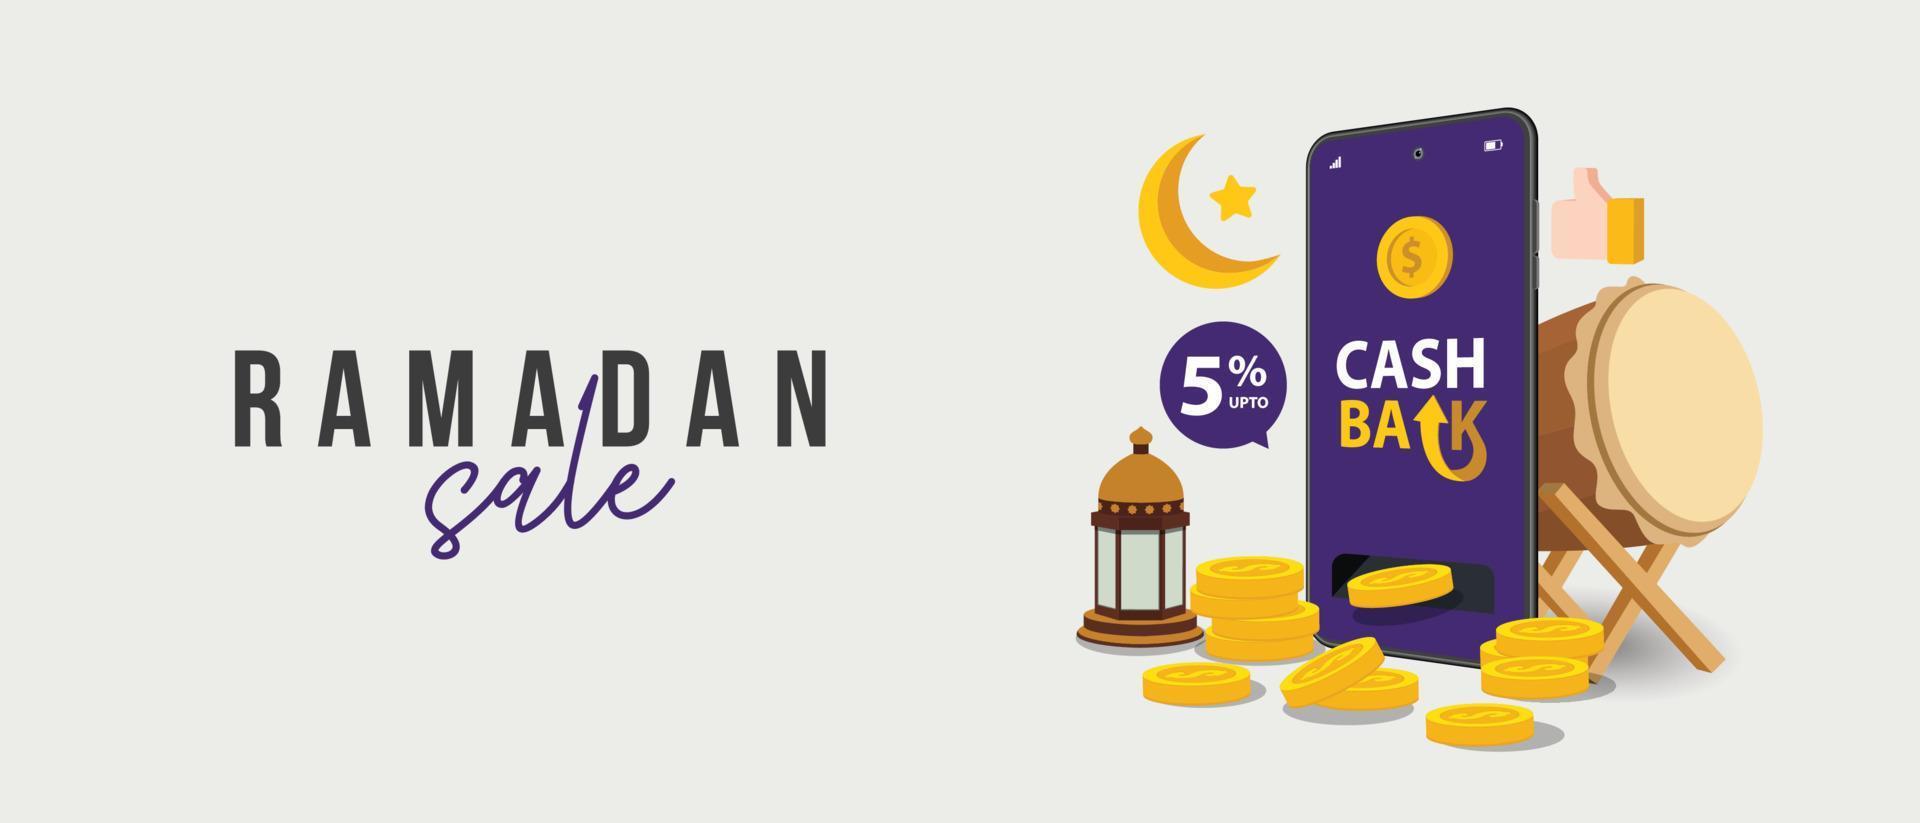 venda do ramadã, design de cabeçalho da web com festival islâmico para banner, pôster, plano de fundo, panfleto, ilustração, folheto e fundo de venda vetor